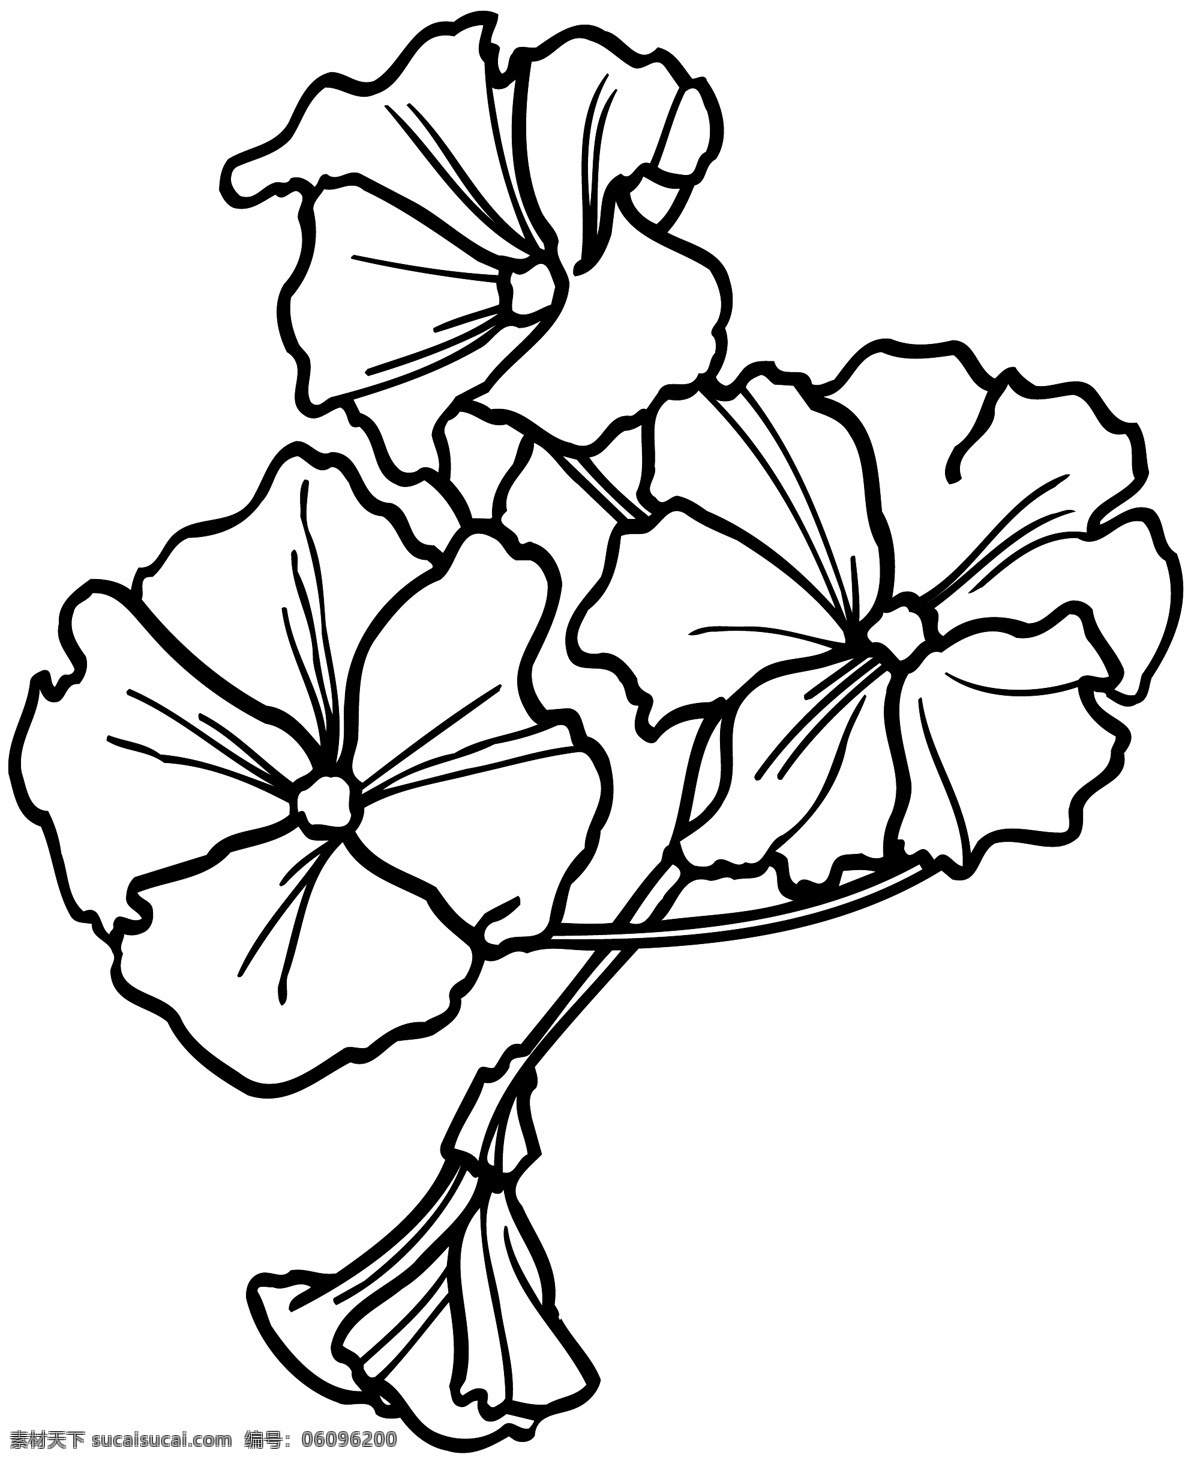 鲜花 花卉 矢量素材 格式 eps格式 设计素材 花草世界 矢量植物 矢量图库 白色